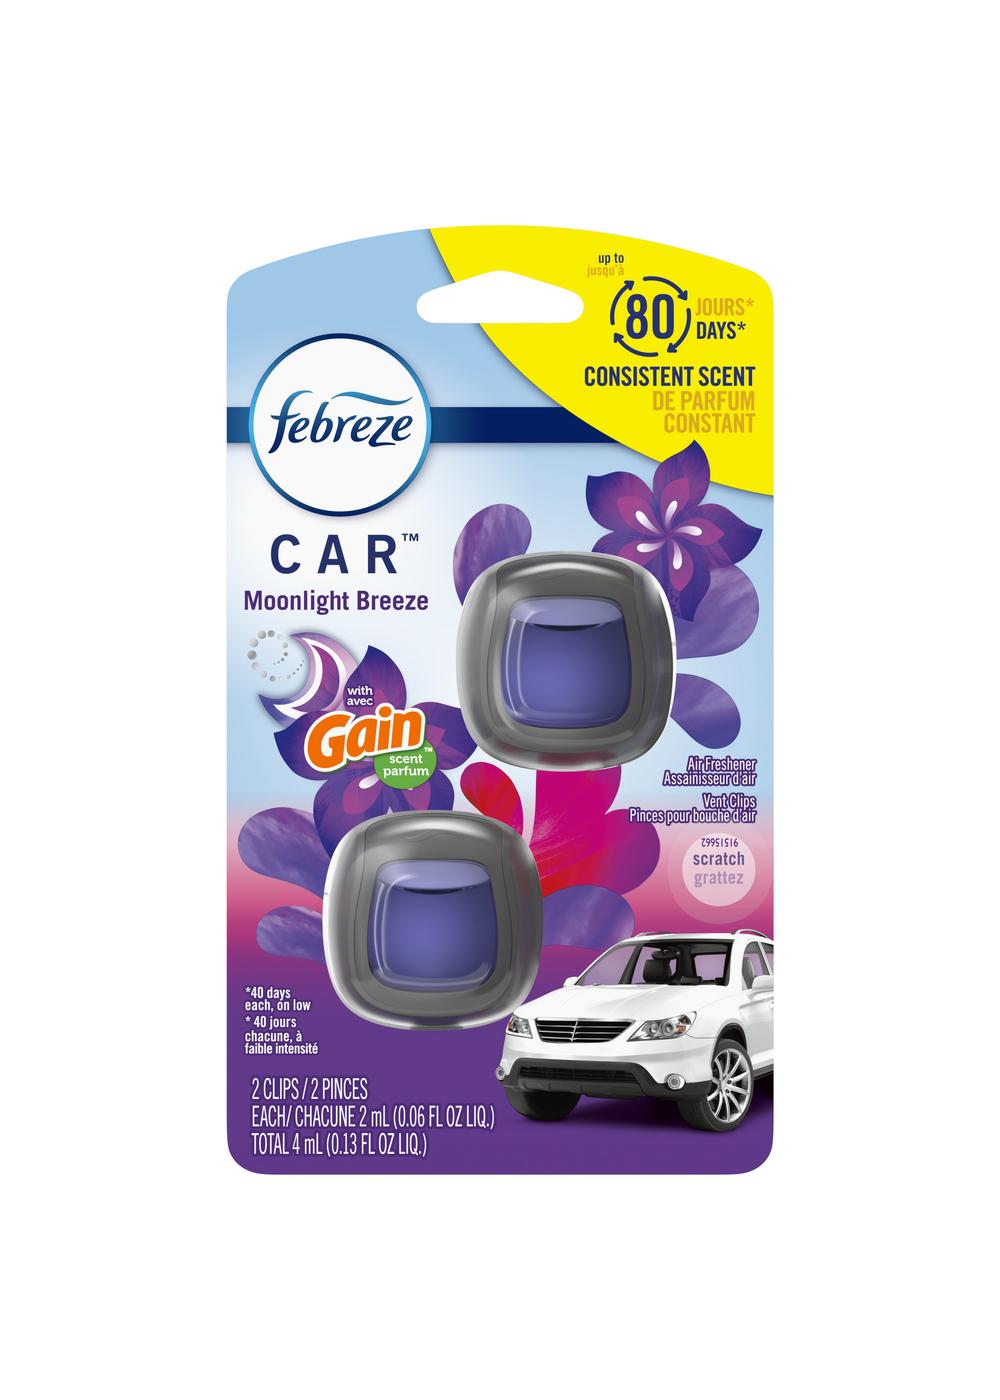 Febreze Car Vent Clip Air Fresheners - Gain Moonlight Breeze; image 1 of 2